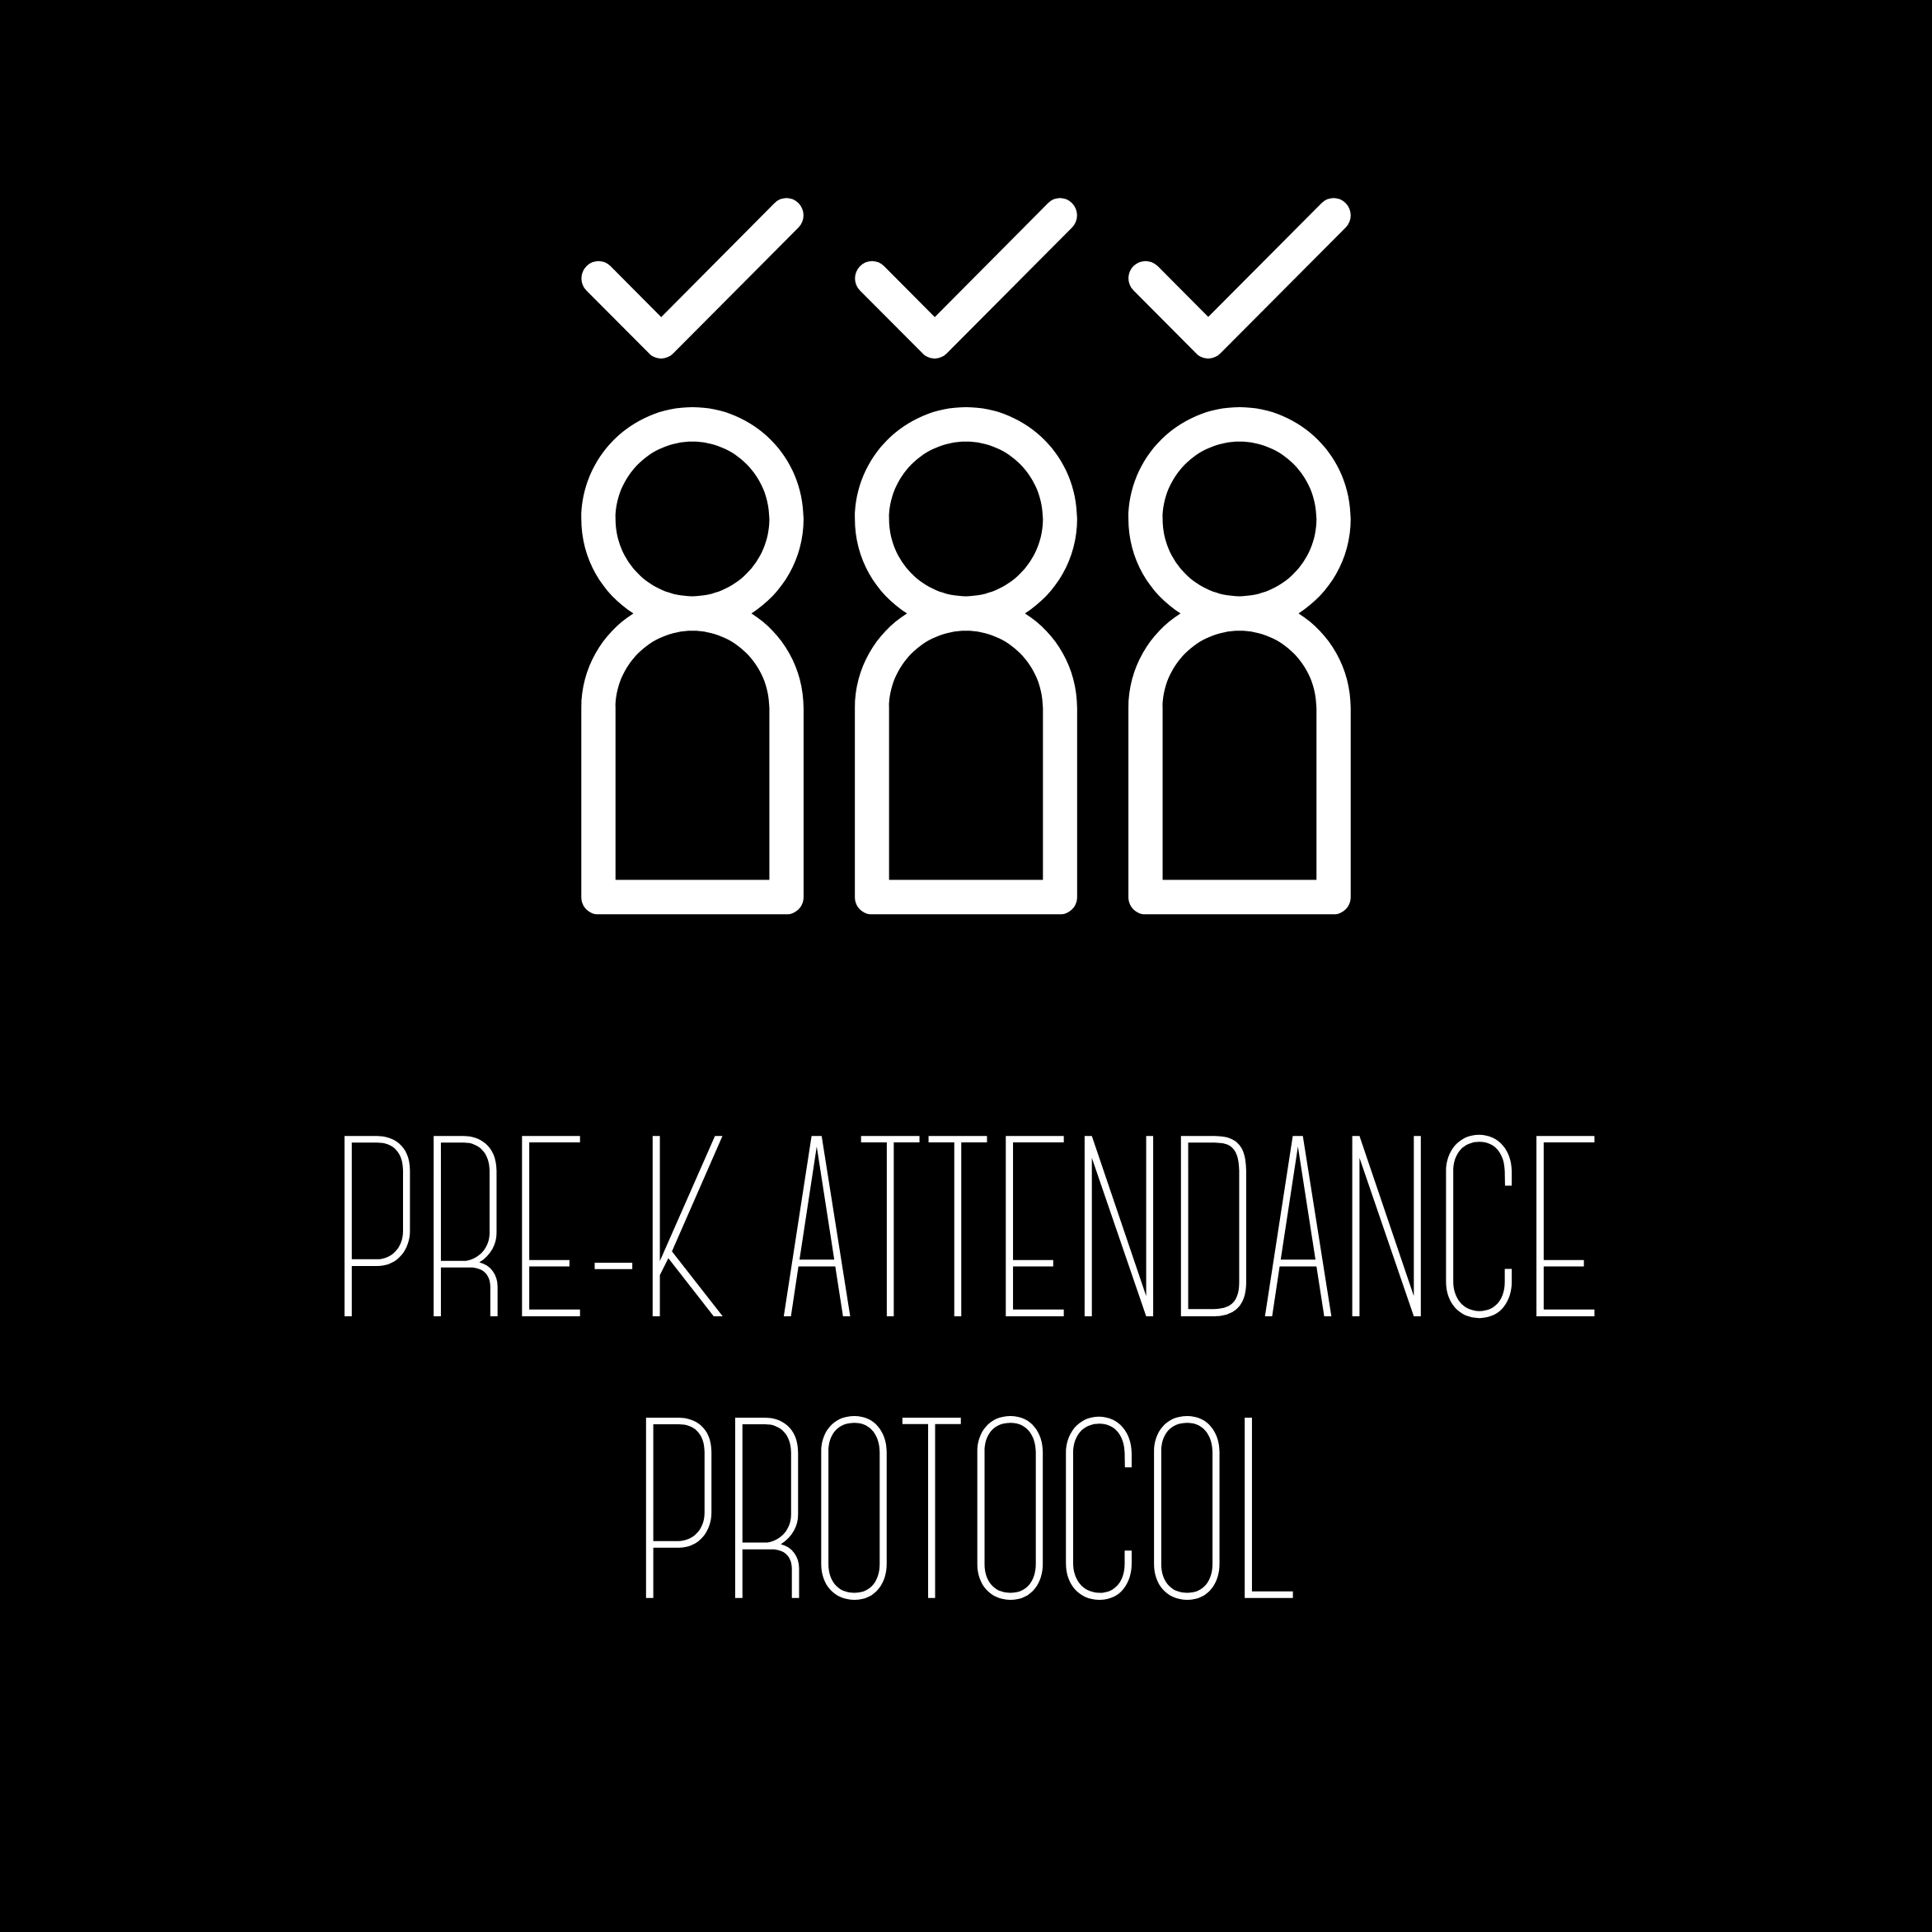 Pre-K Attendance Protocol